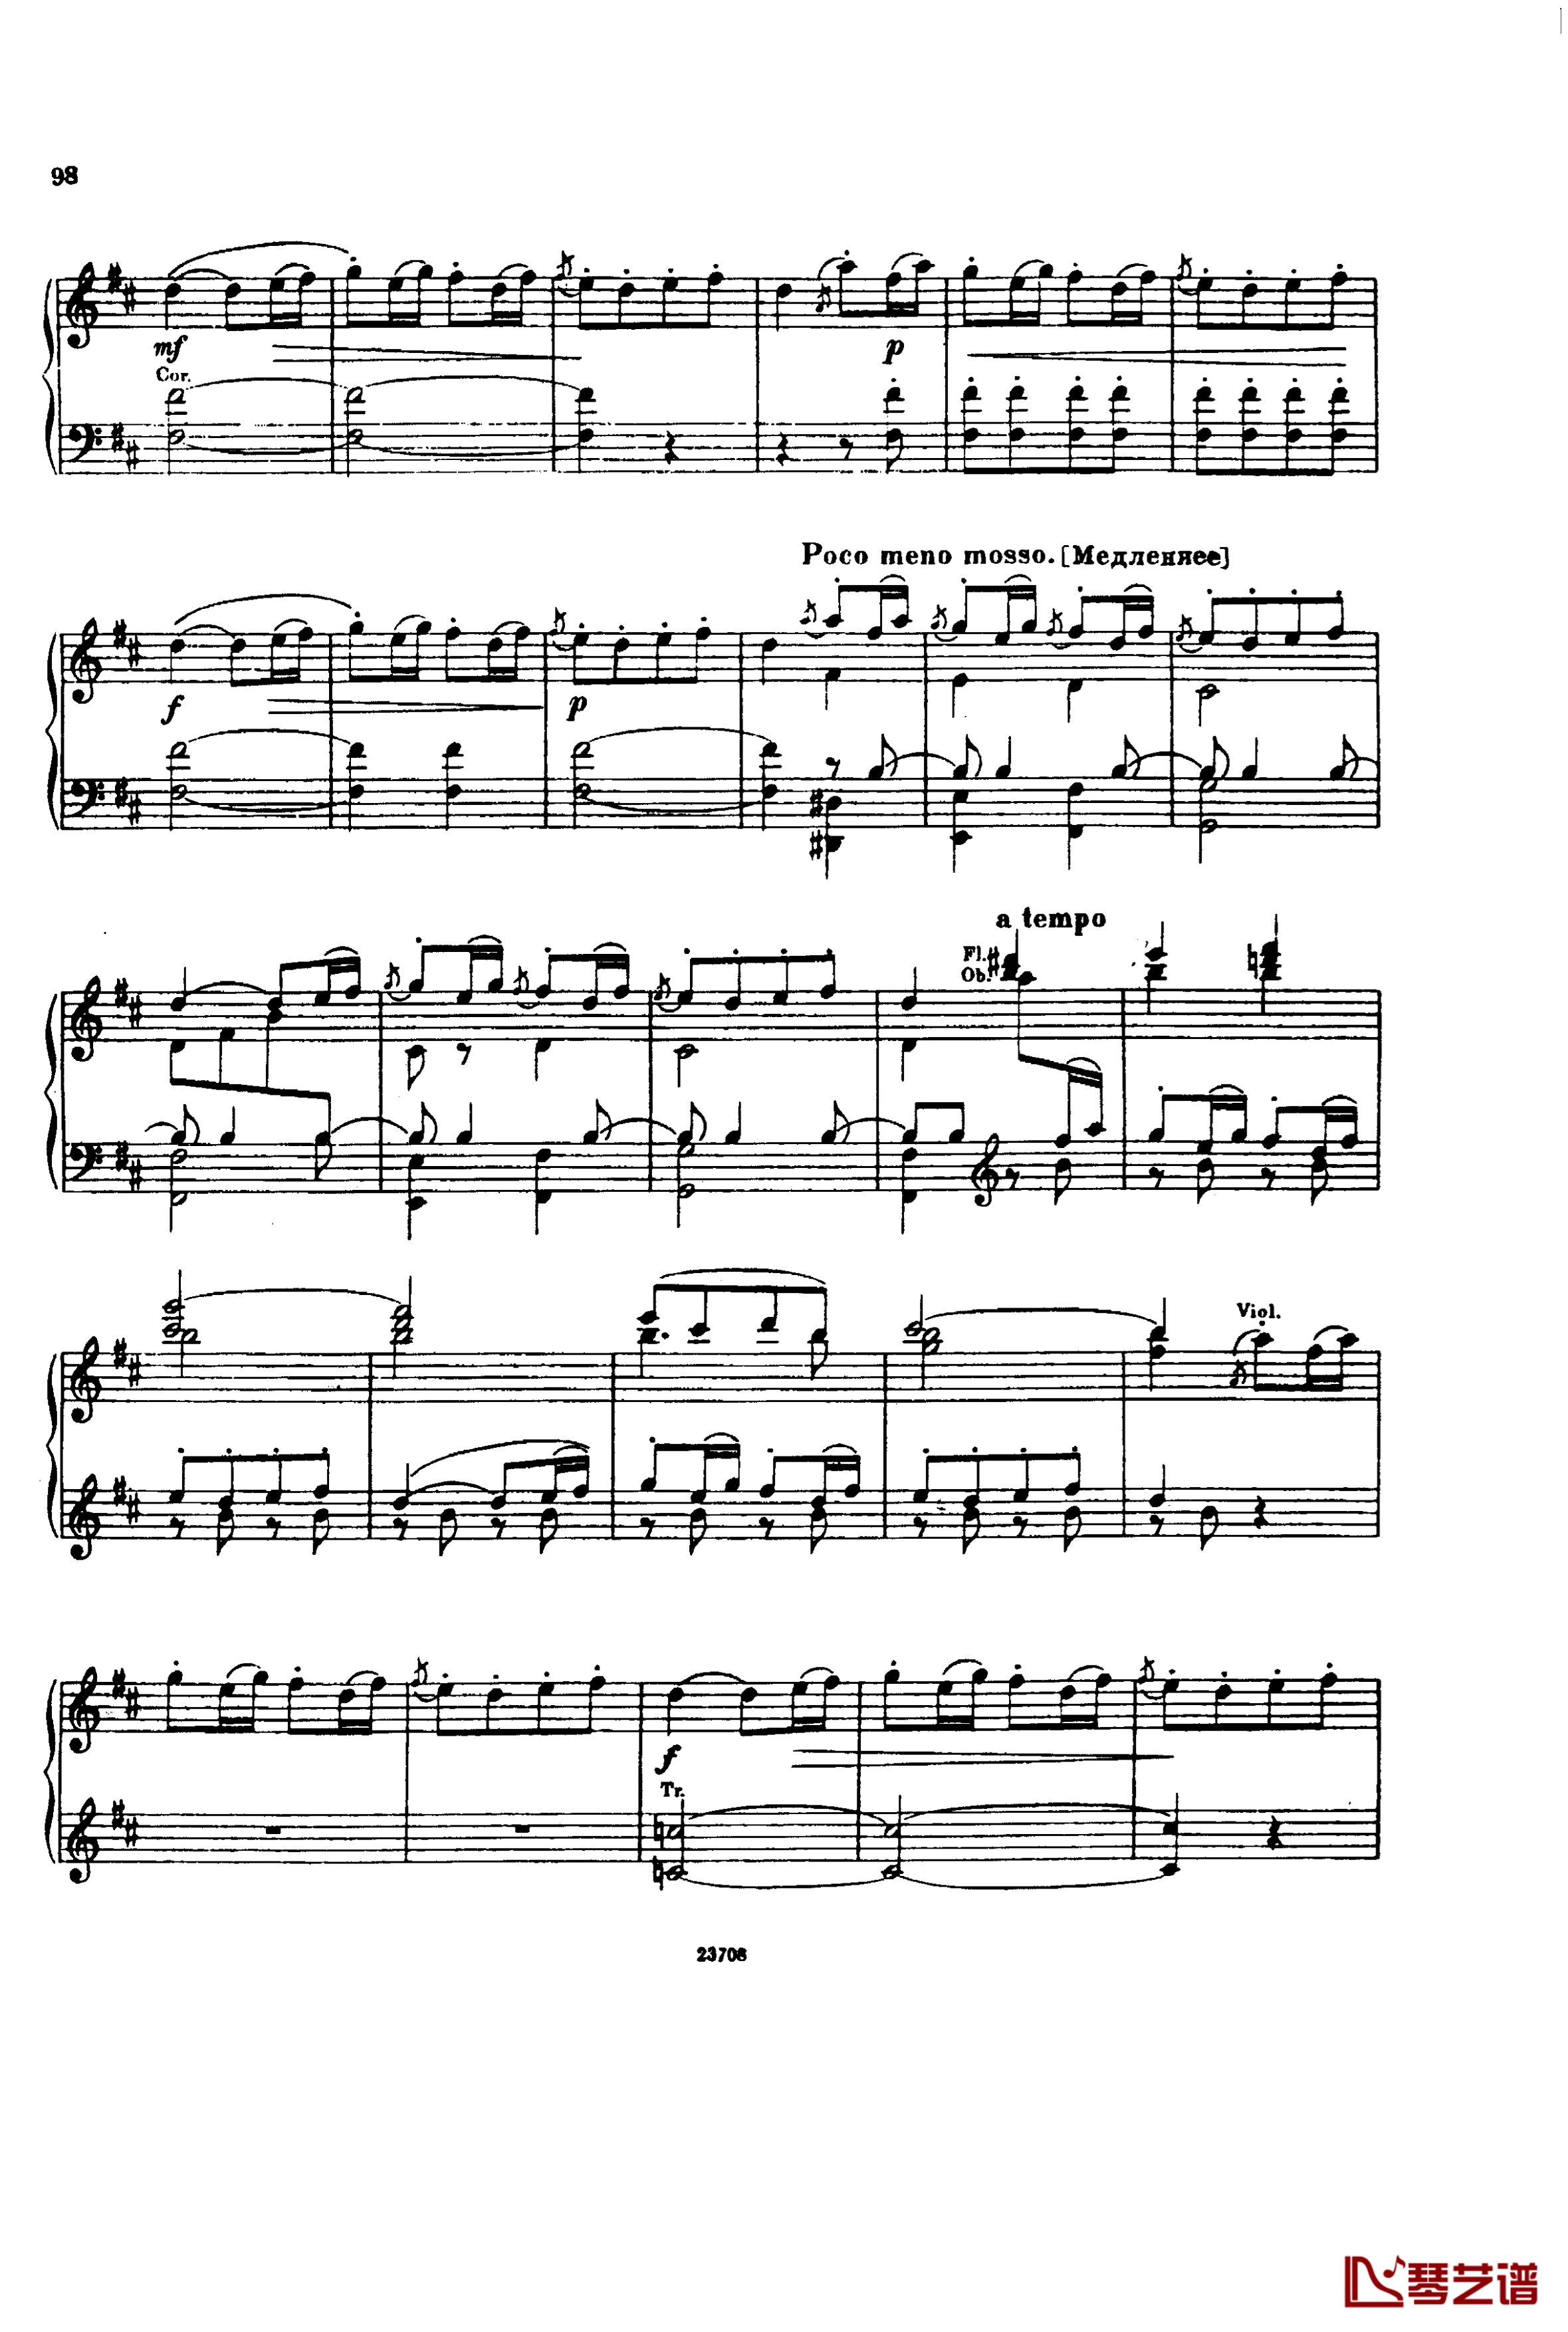 卡玛林斯卡亚幻想曲钢琴谱-格林卡12